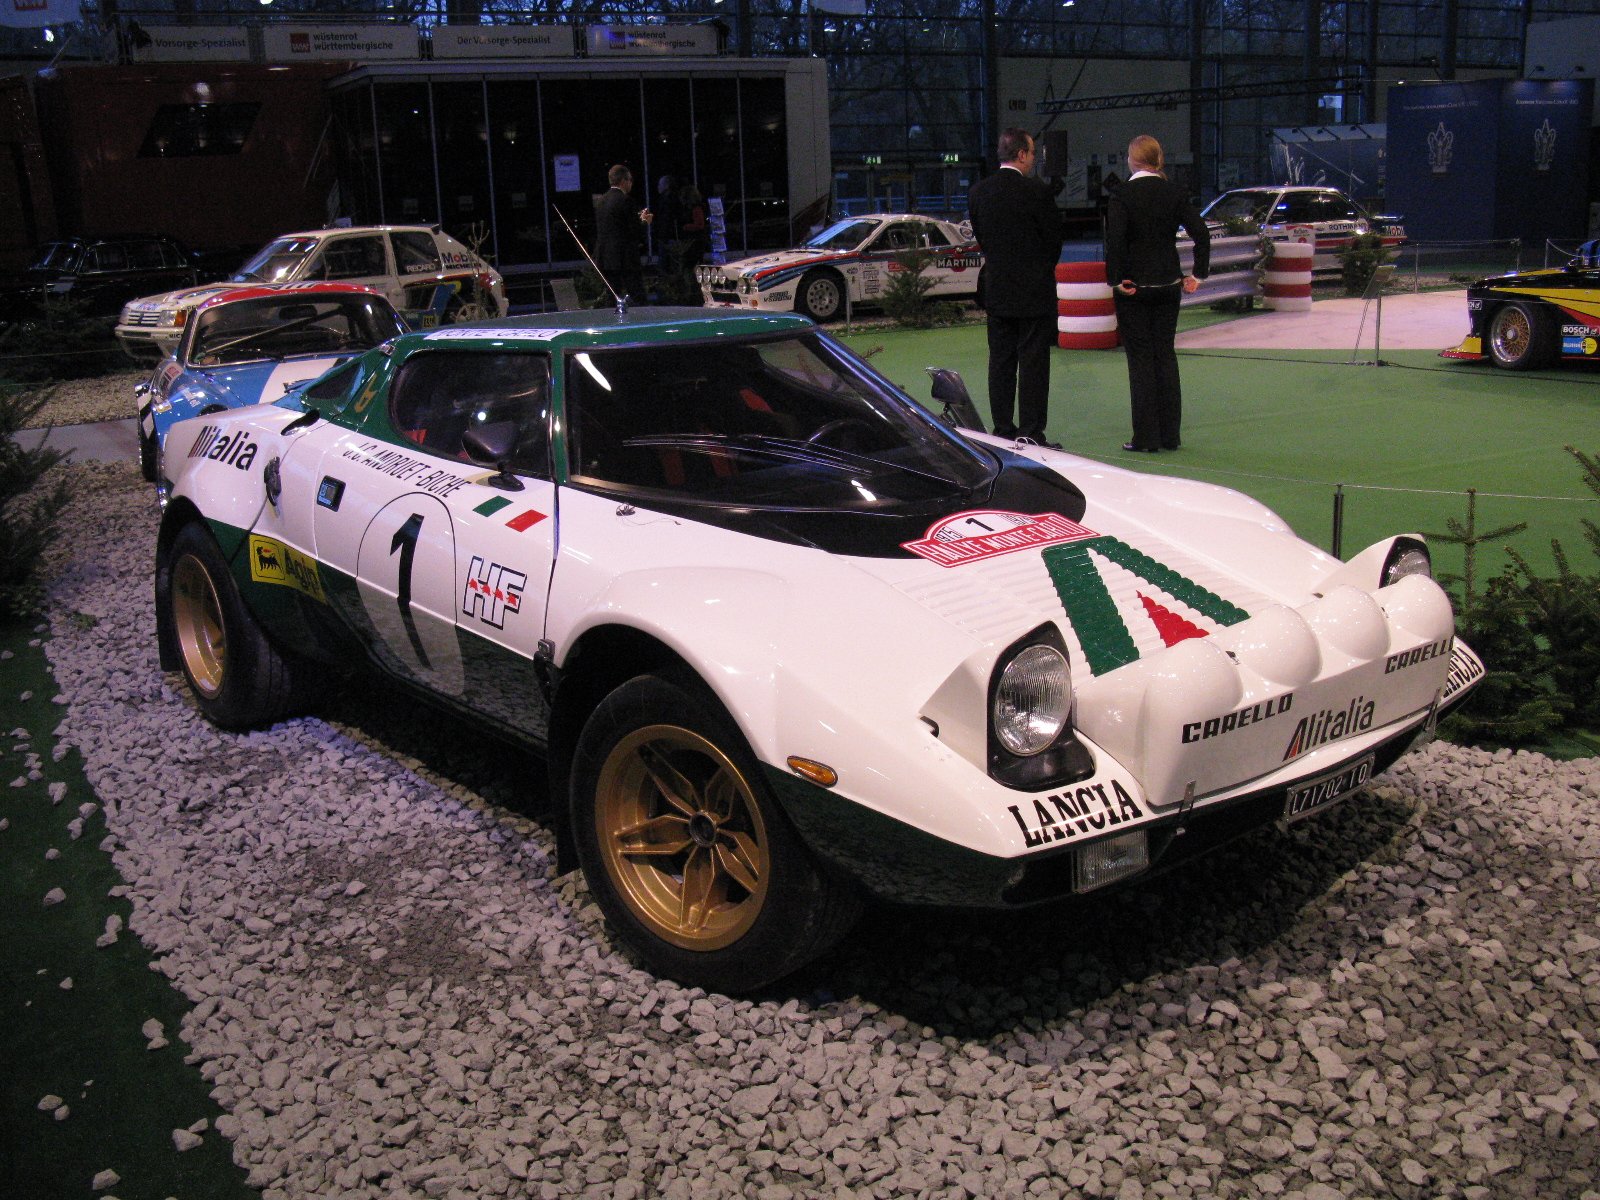 Lancia Stratos rally